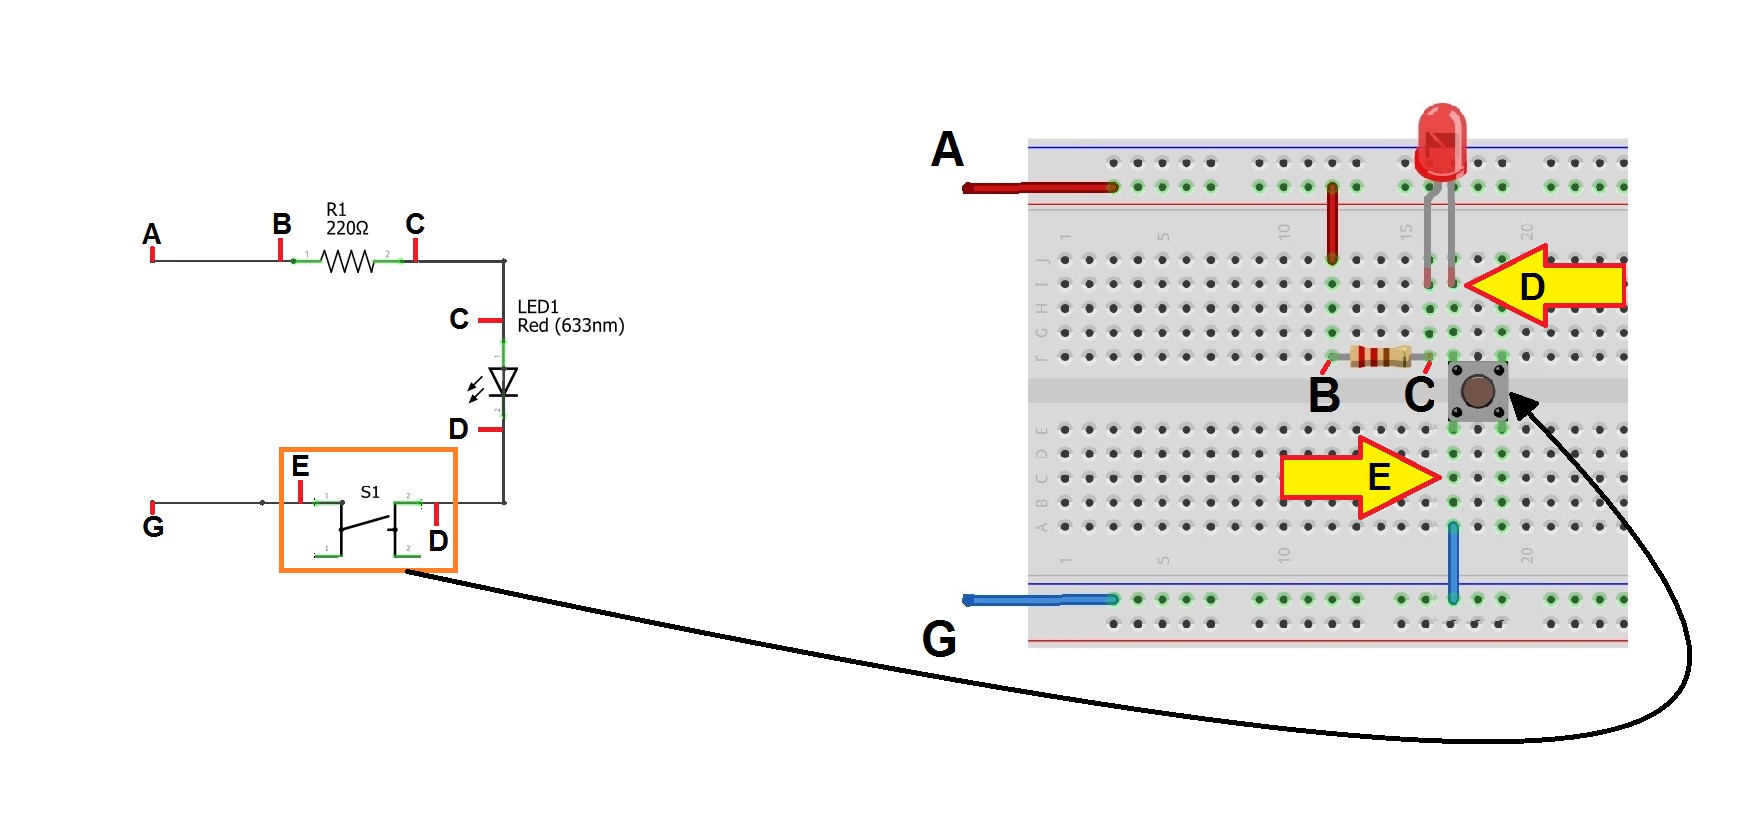 Passo 4 - montando circuito em uma matriz de contato - protoboard